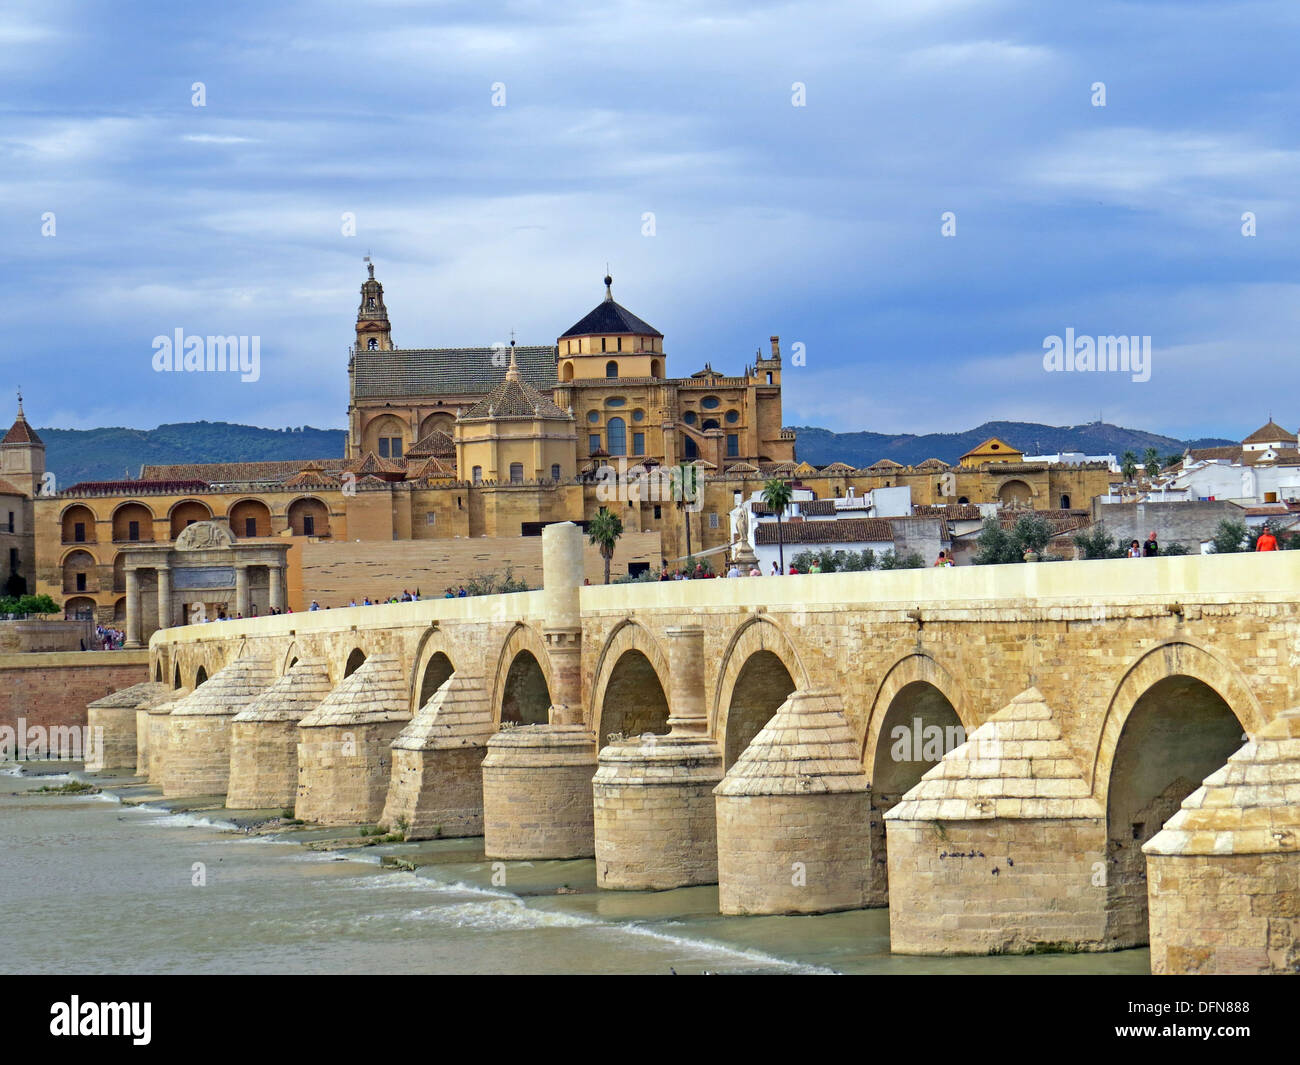 Córdoba, Andalusien, Spanien mit der römischen Brücke über den Guadalquivir Fluss in Richtung der Kathedrale. Foto von Tony Gale / Stockfoto